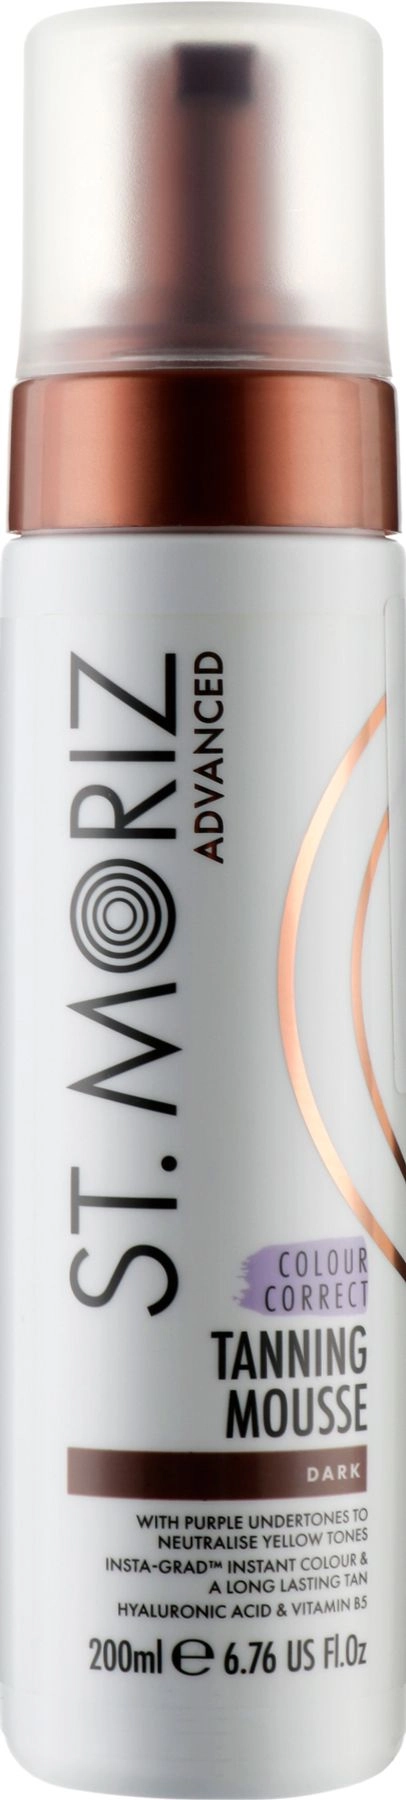 Мусс для коррекции автозагара - St. Moriz St.Moriz Advanced Colour Correcting Tanning Mousse Dark, темный оттенок, 200 мл - фото N1